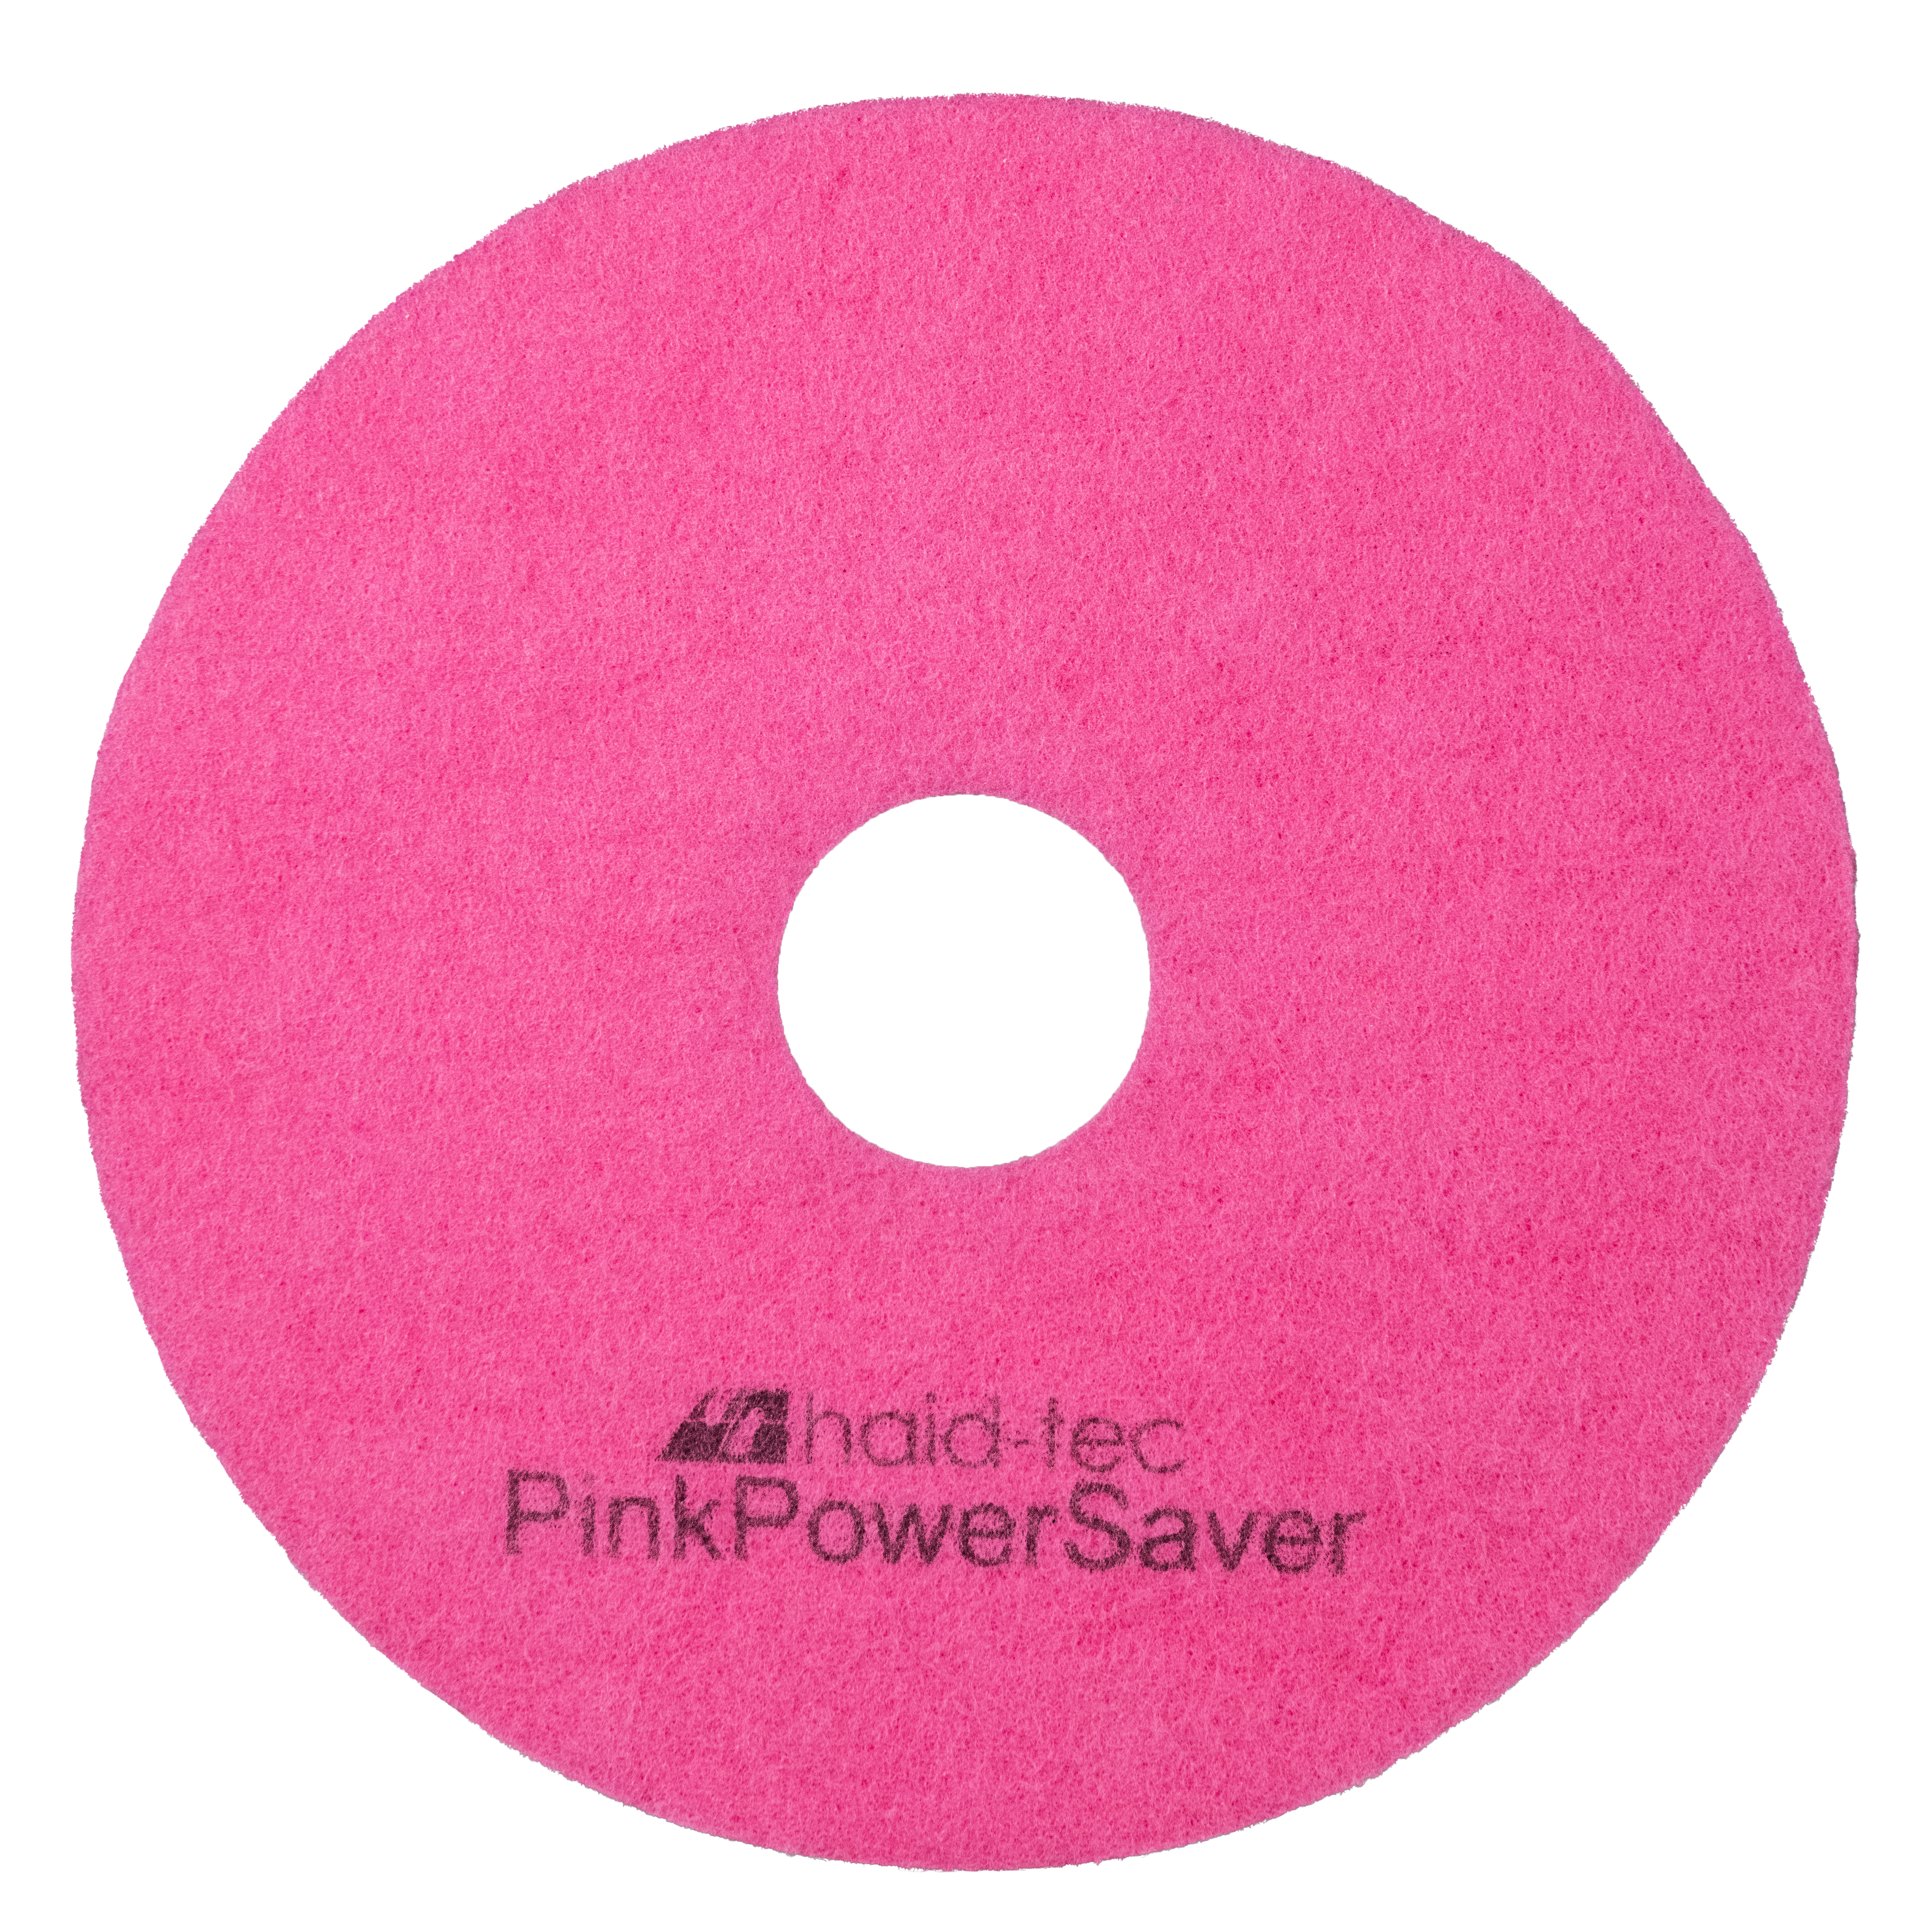 PinkPowerSaver Pad 8Zoll/203mm für i-mop XL, Pad für Kompakt-Scheuersaugmaschine - Melaminpad für die Intensiv- und Unterhaltsreinigung